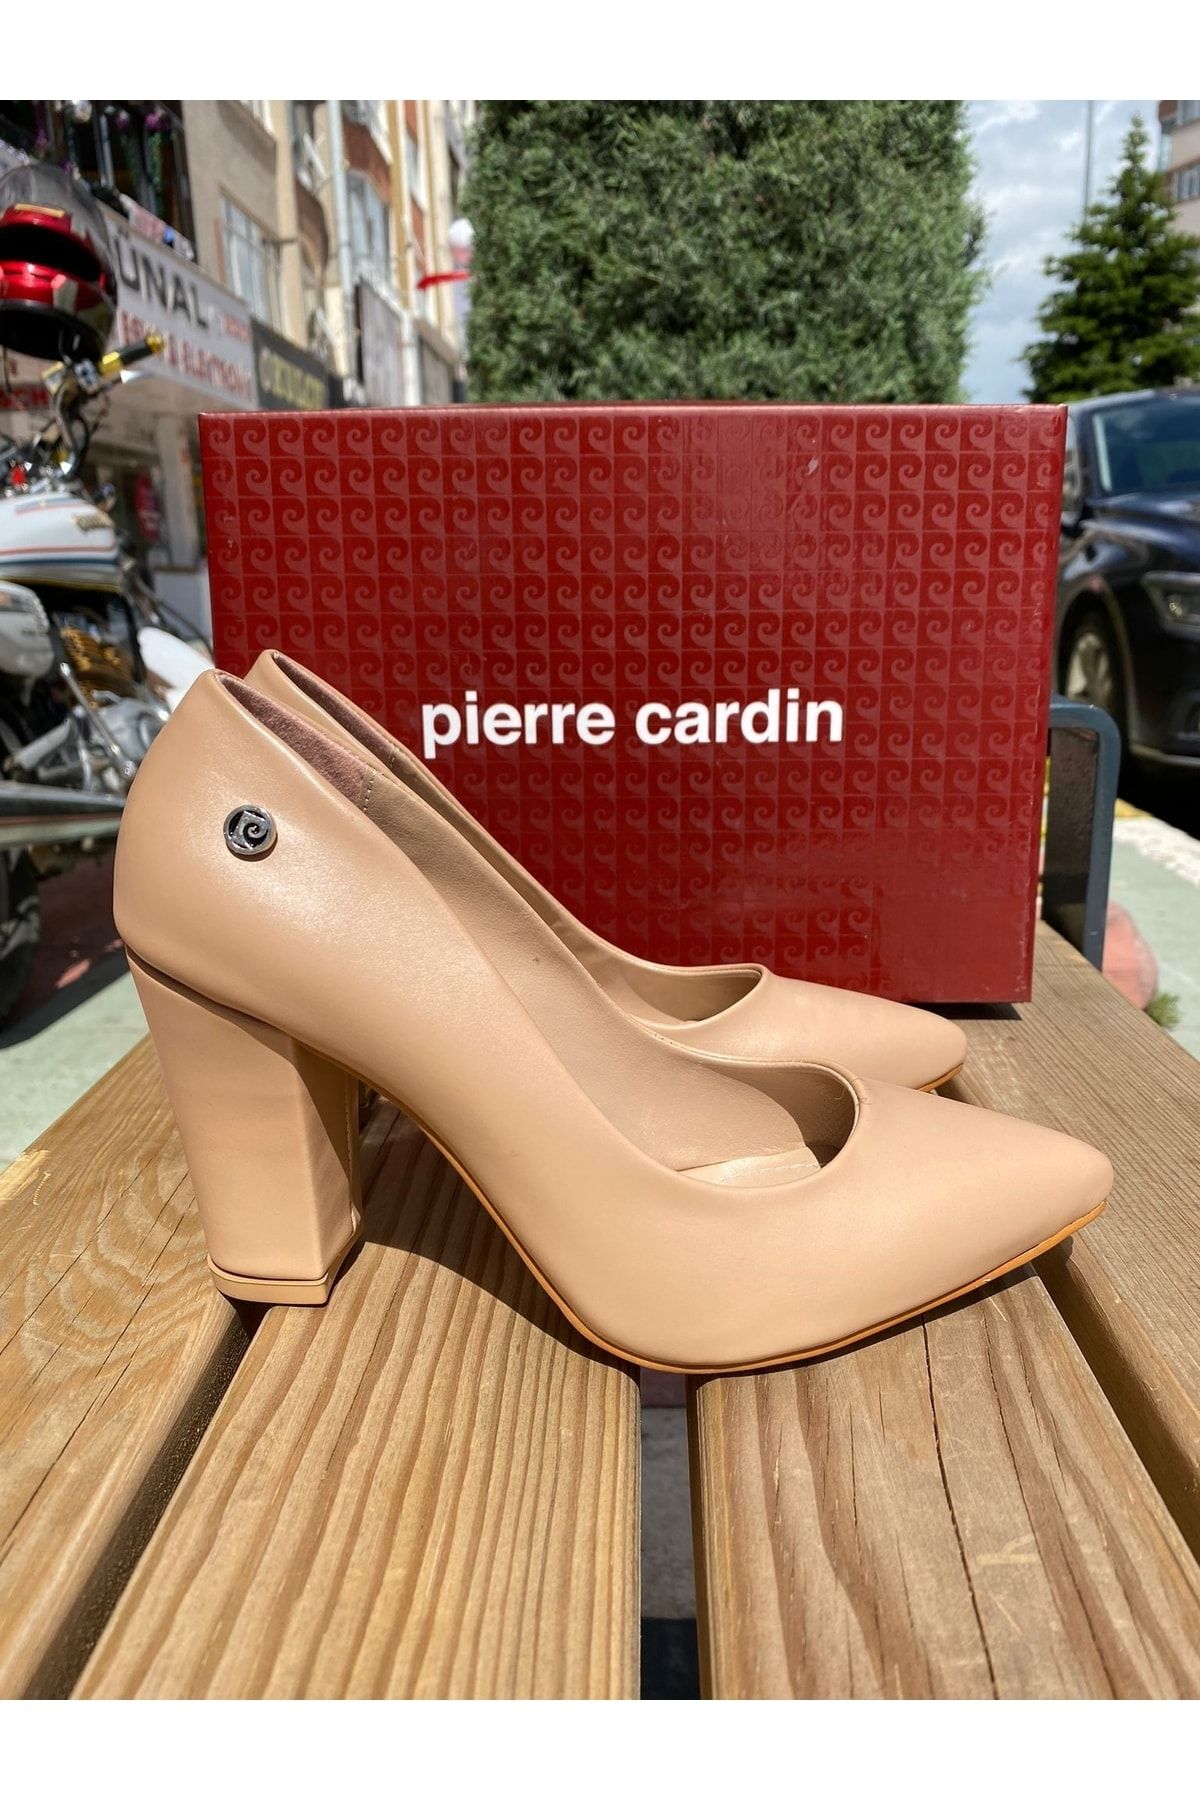 Pierre Cardin ® | Pc-52273 Cilt Deri Comfort Taban Kadın 8cm Kalın Topuklu Günlük Stiletto Ayakkabı